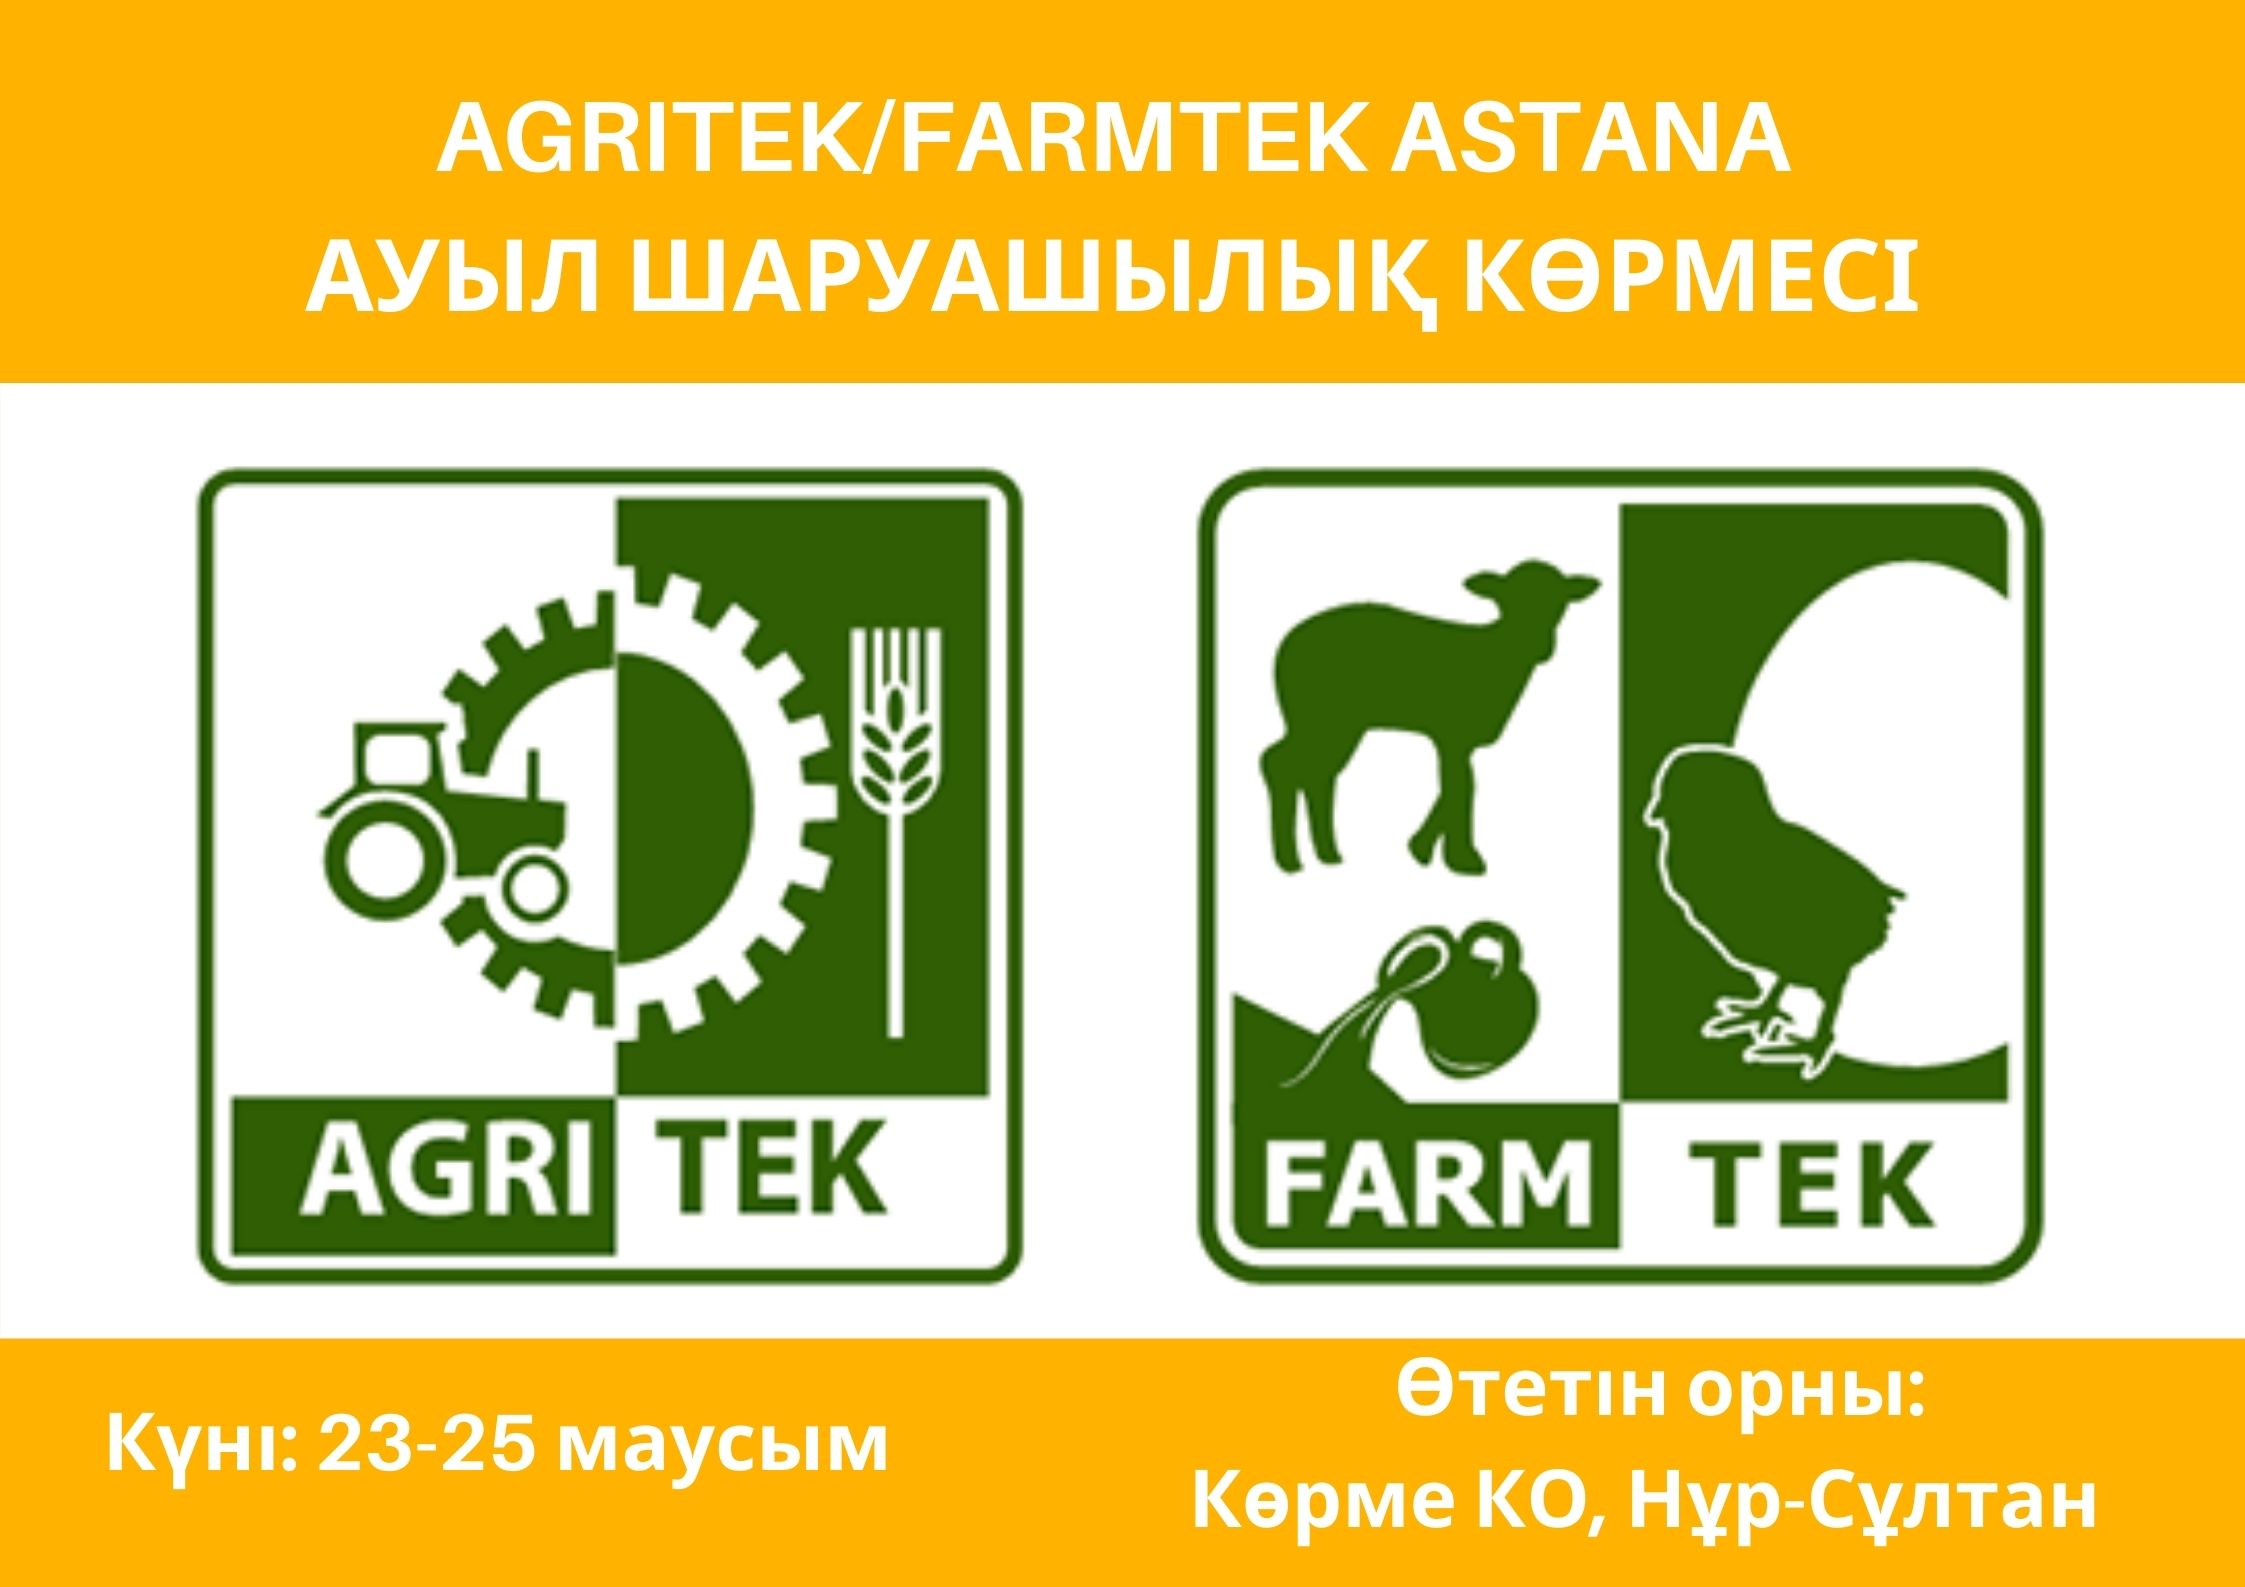 AGRITEK/FARMTEK ASTANA 2021 - 16-я международная специализированная выставка сельского хозяйства в Казахстане